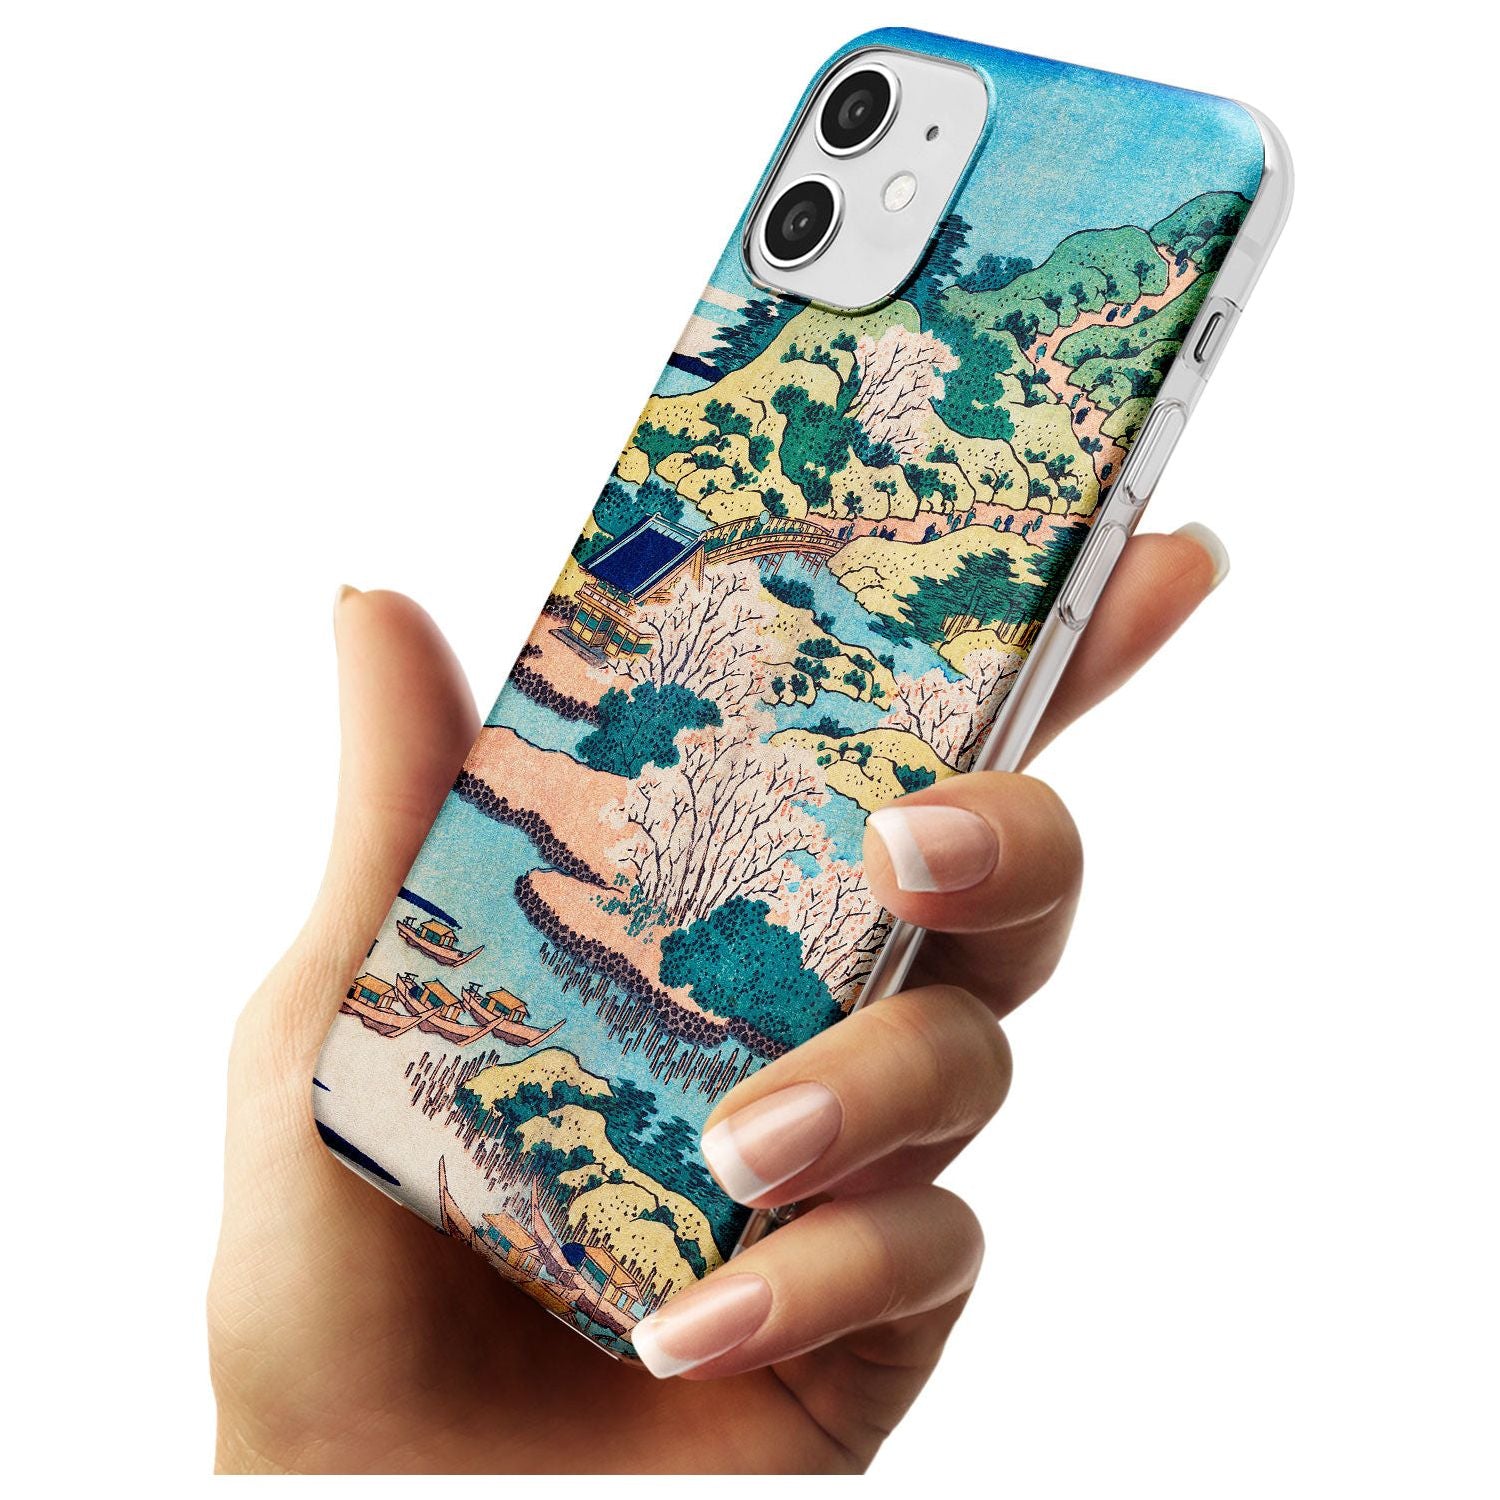 Coastal Community by Katsushika Hokusai  Black Impact Phone Case for iPhone 11